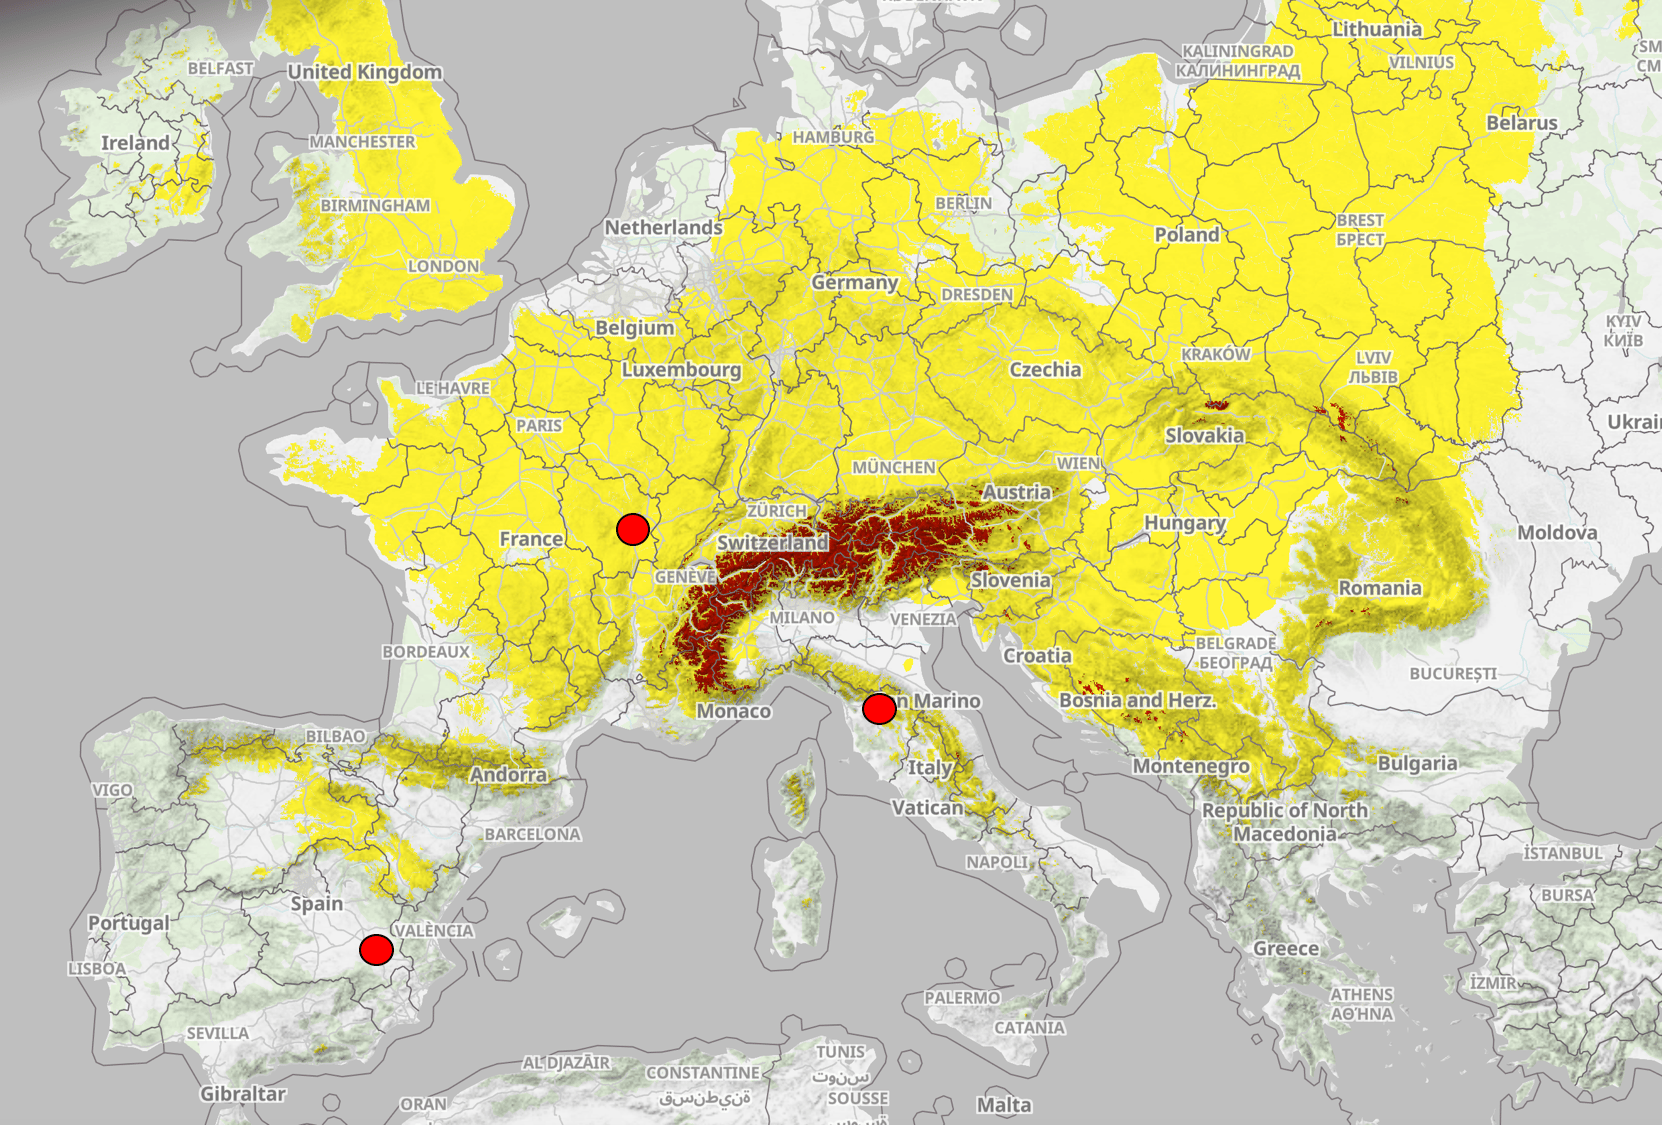 Abbildung 1: Spätfrostwarnung in Europa (markiert sind wichtige Weinbauregionen Burgund, Frankreich und Toskana, Italien)